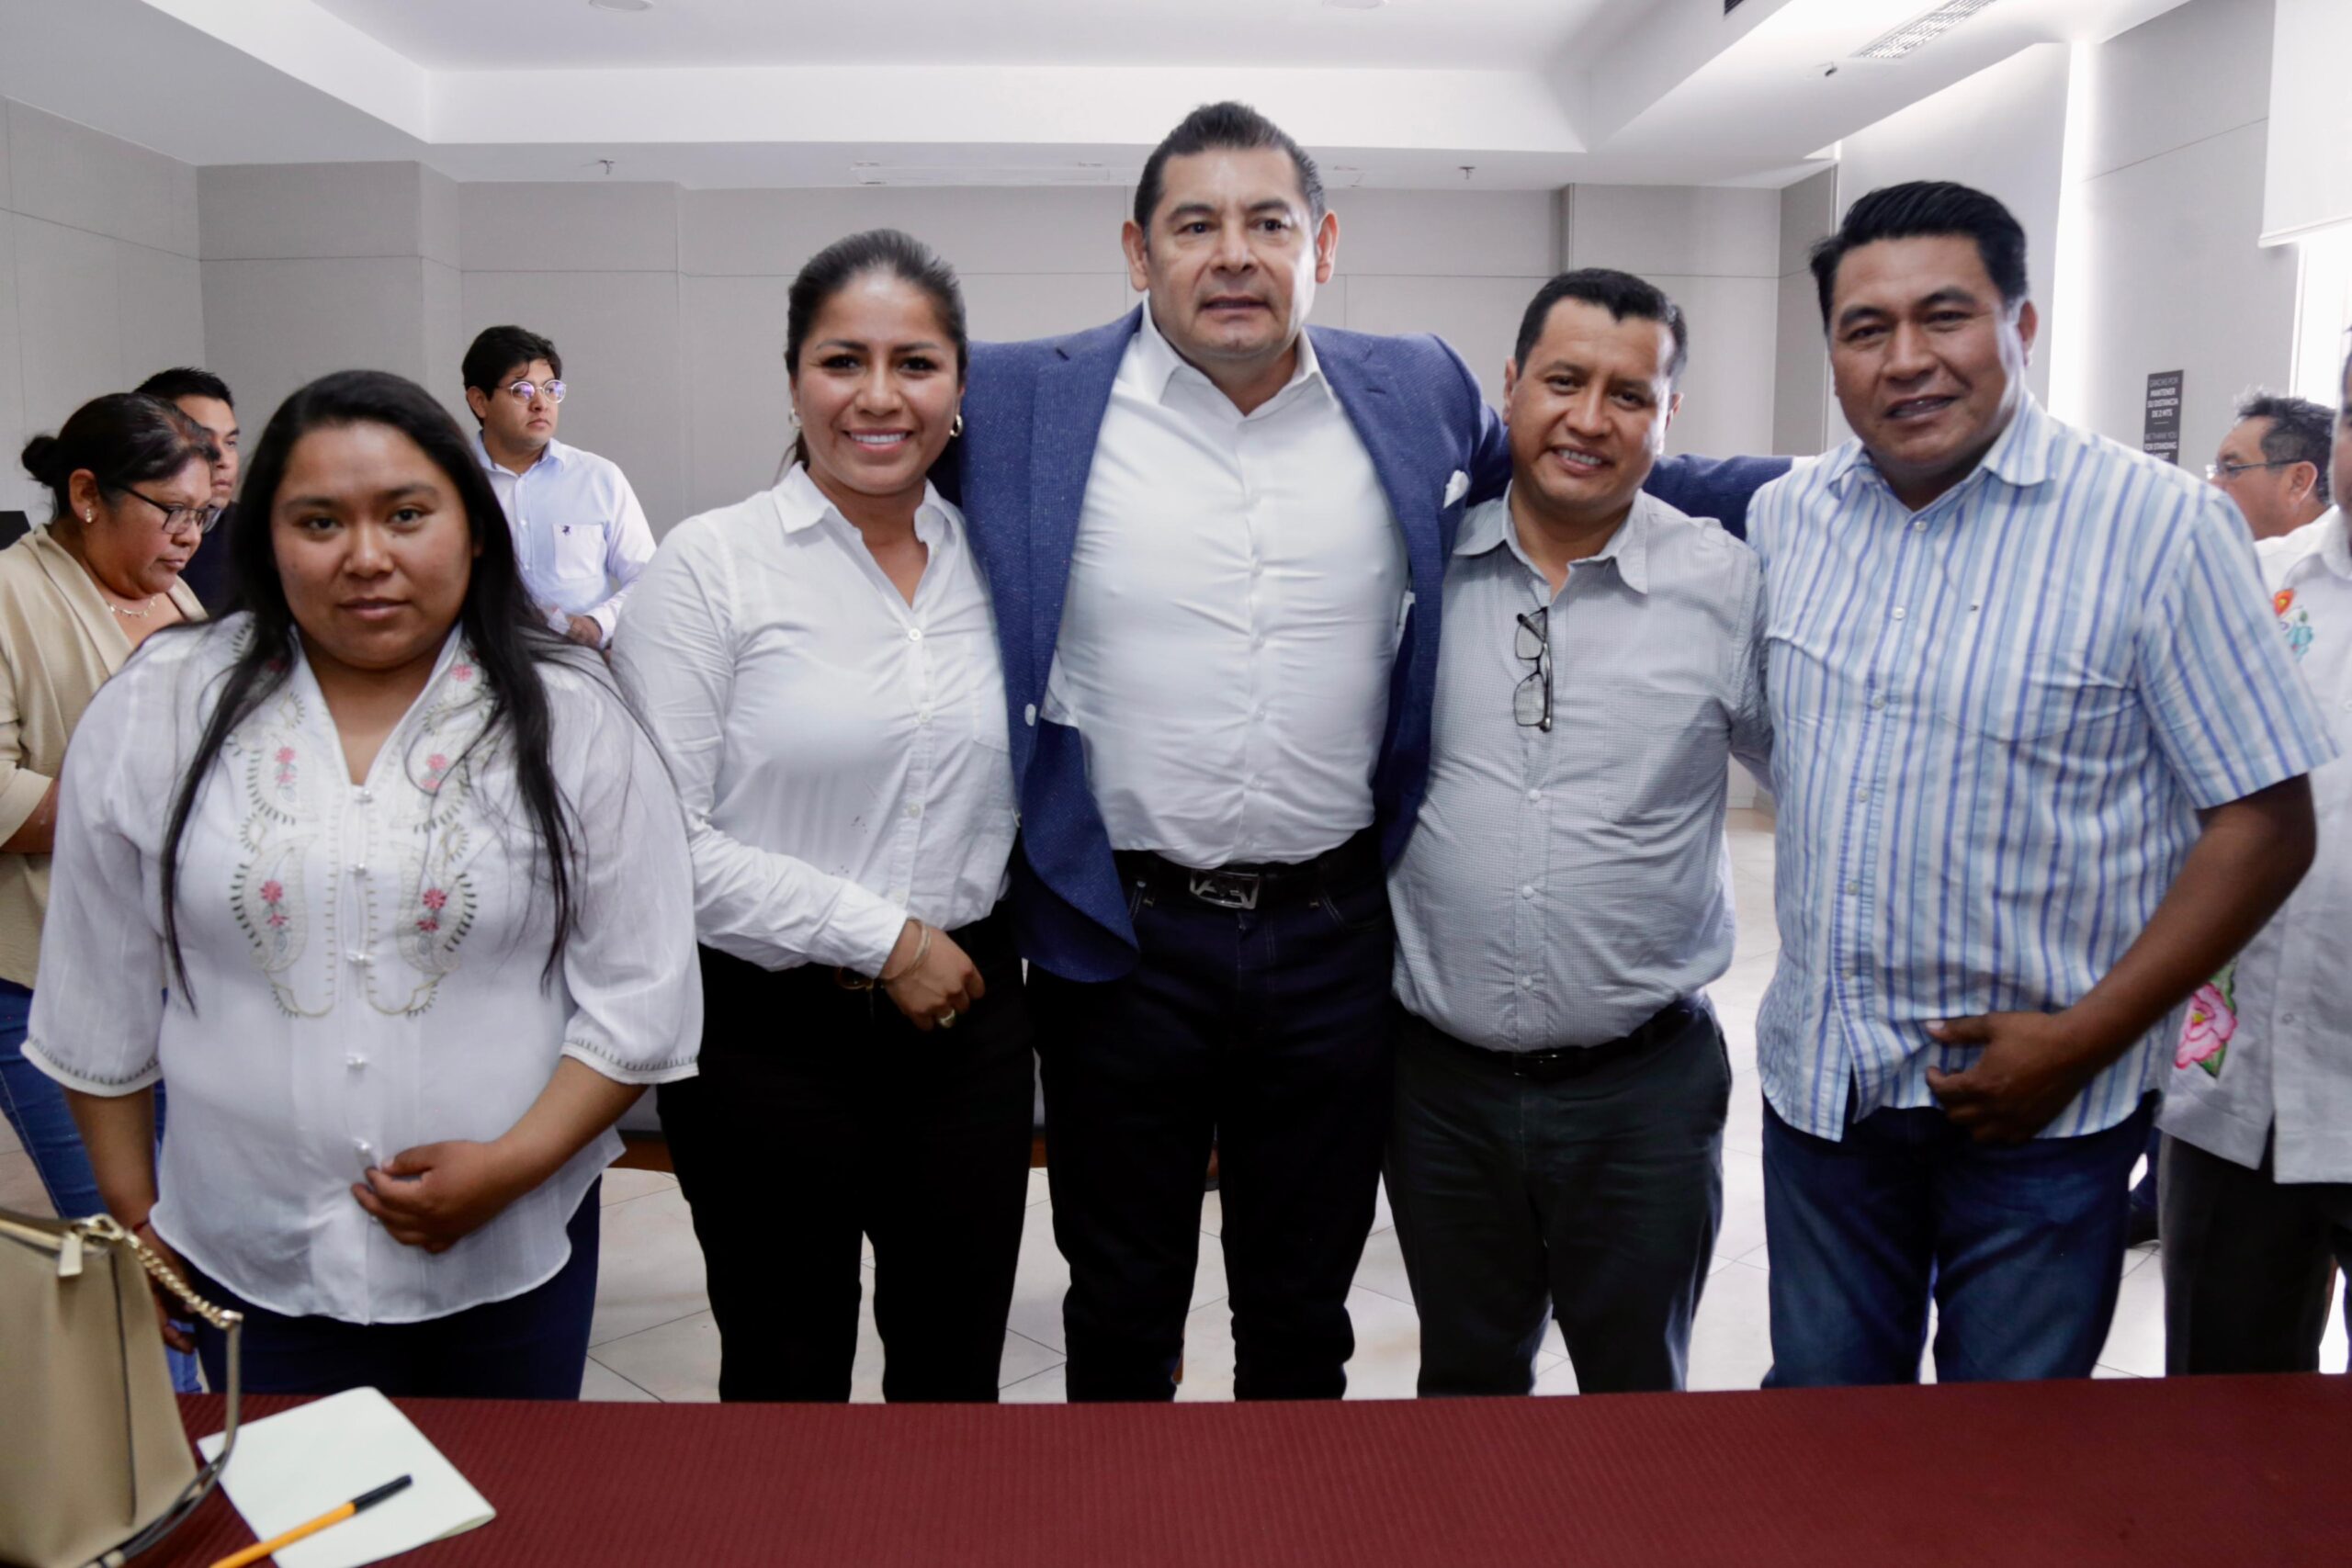 Armenta pide fortalecer la unidad de la 4T en Puebla